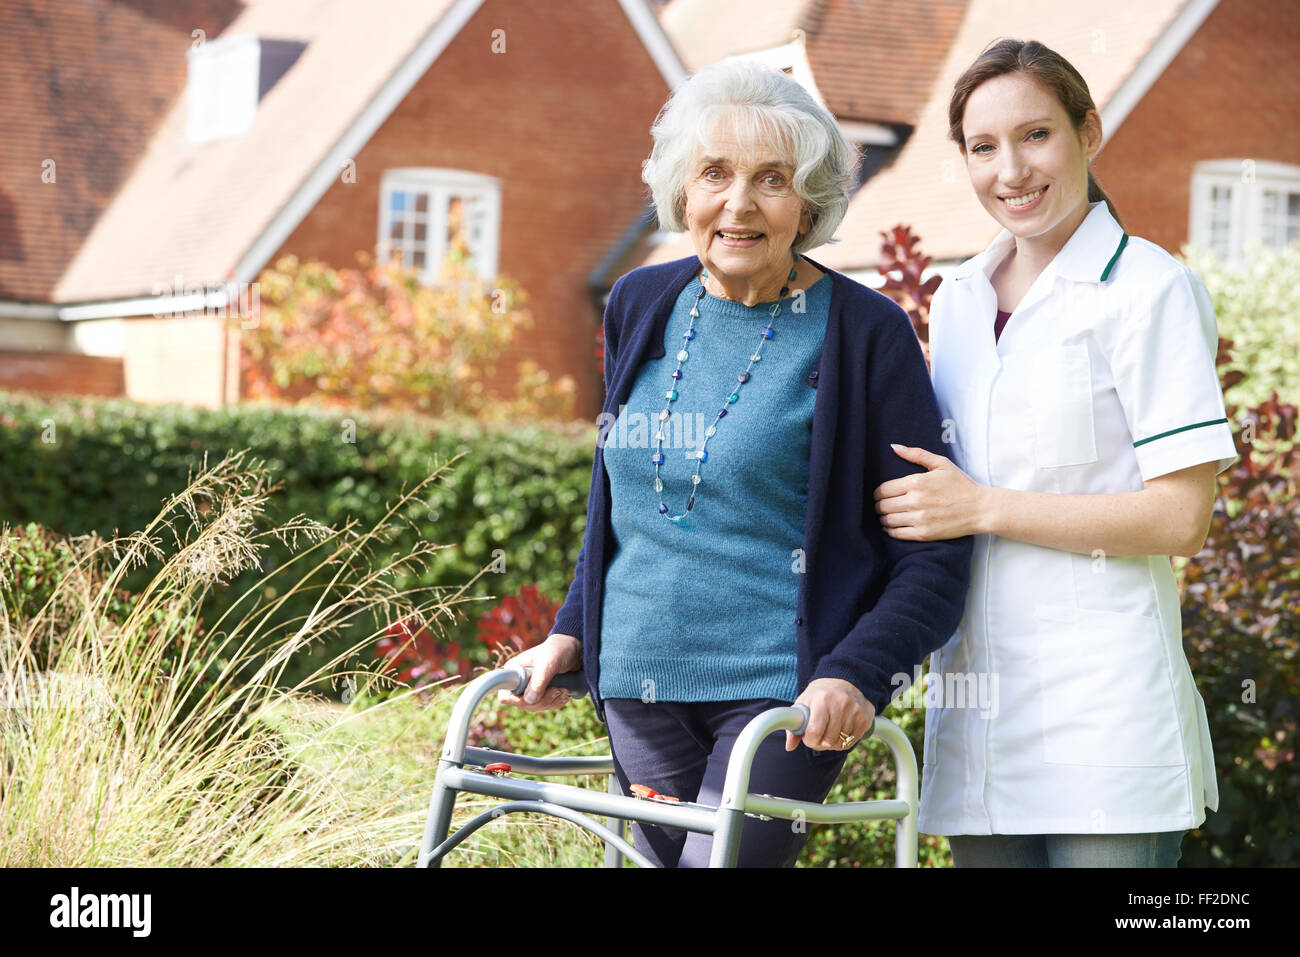 Carer Helping Senior Woman To Walk In Garden Using Walking Frame Stock Photo